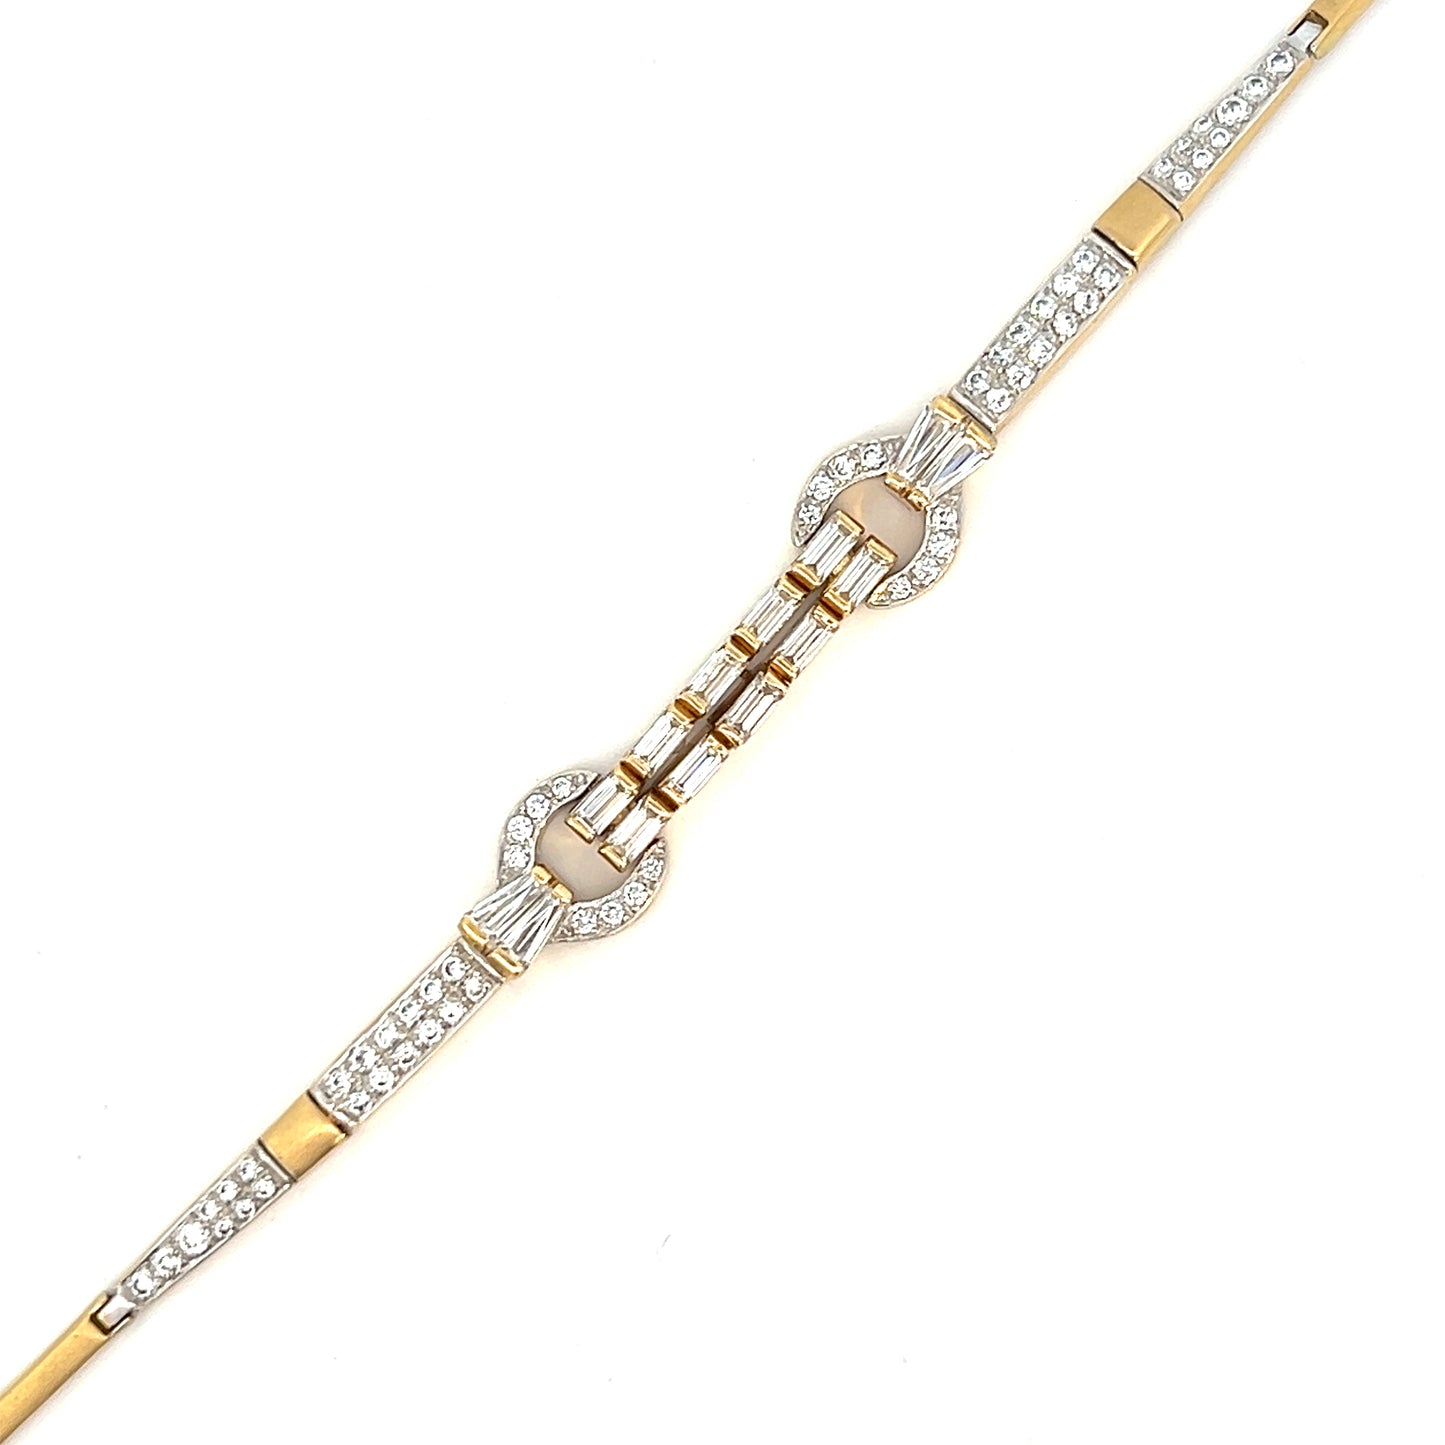 8" White Stone Fashion Bracelet - Round & Baguette Stones - 18k - Yellow Gold